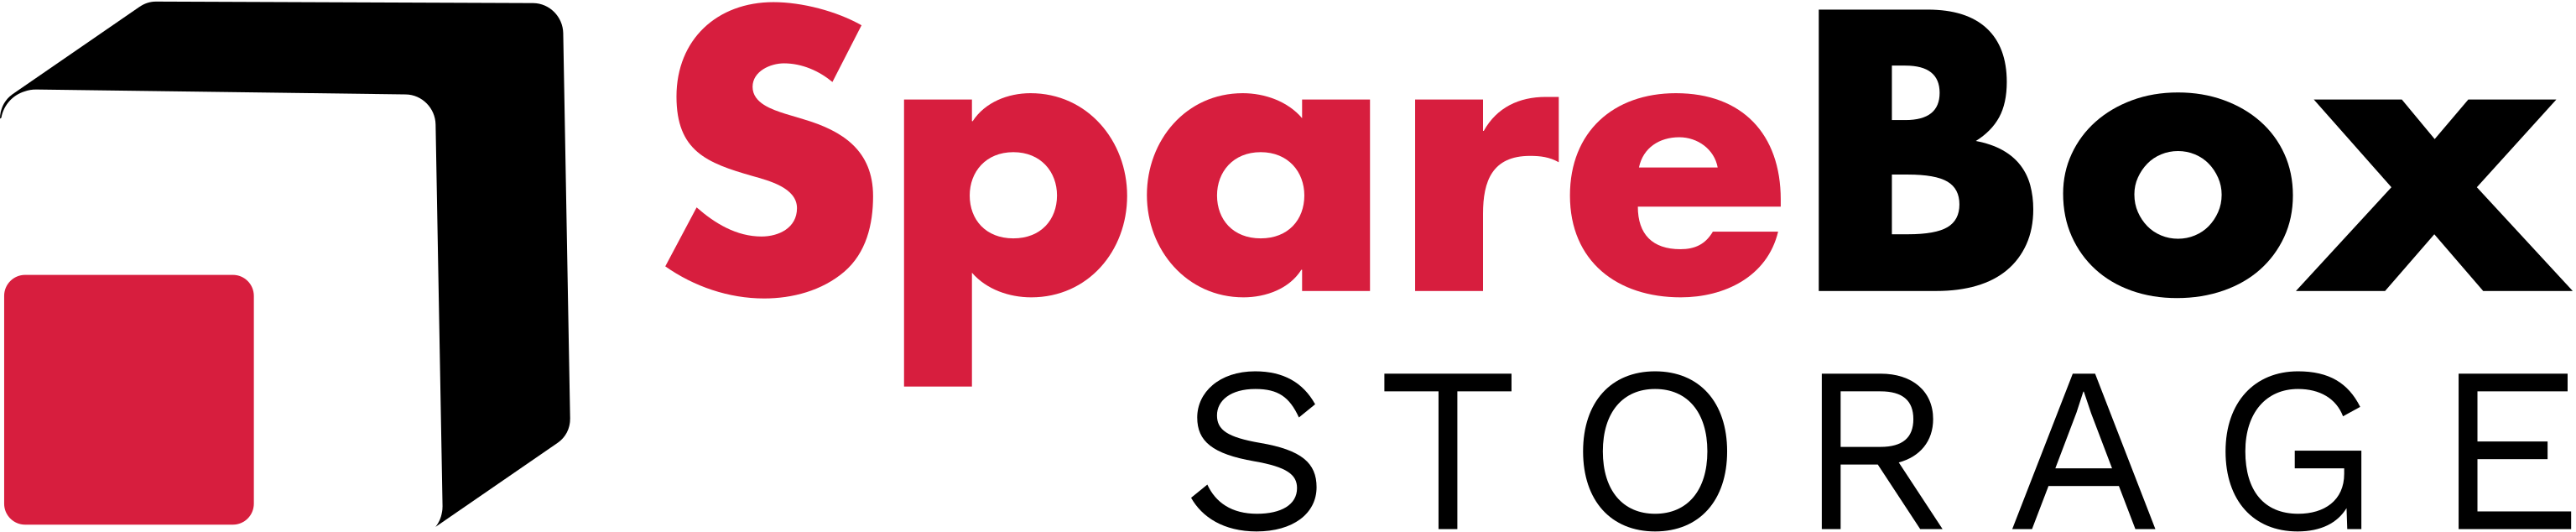 SpareBox full company logo